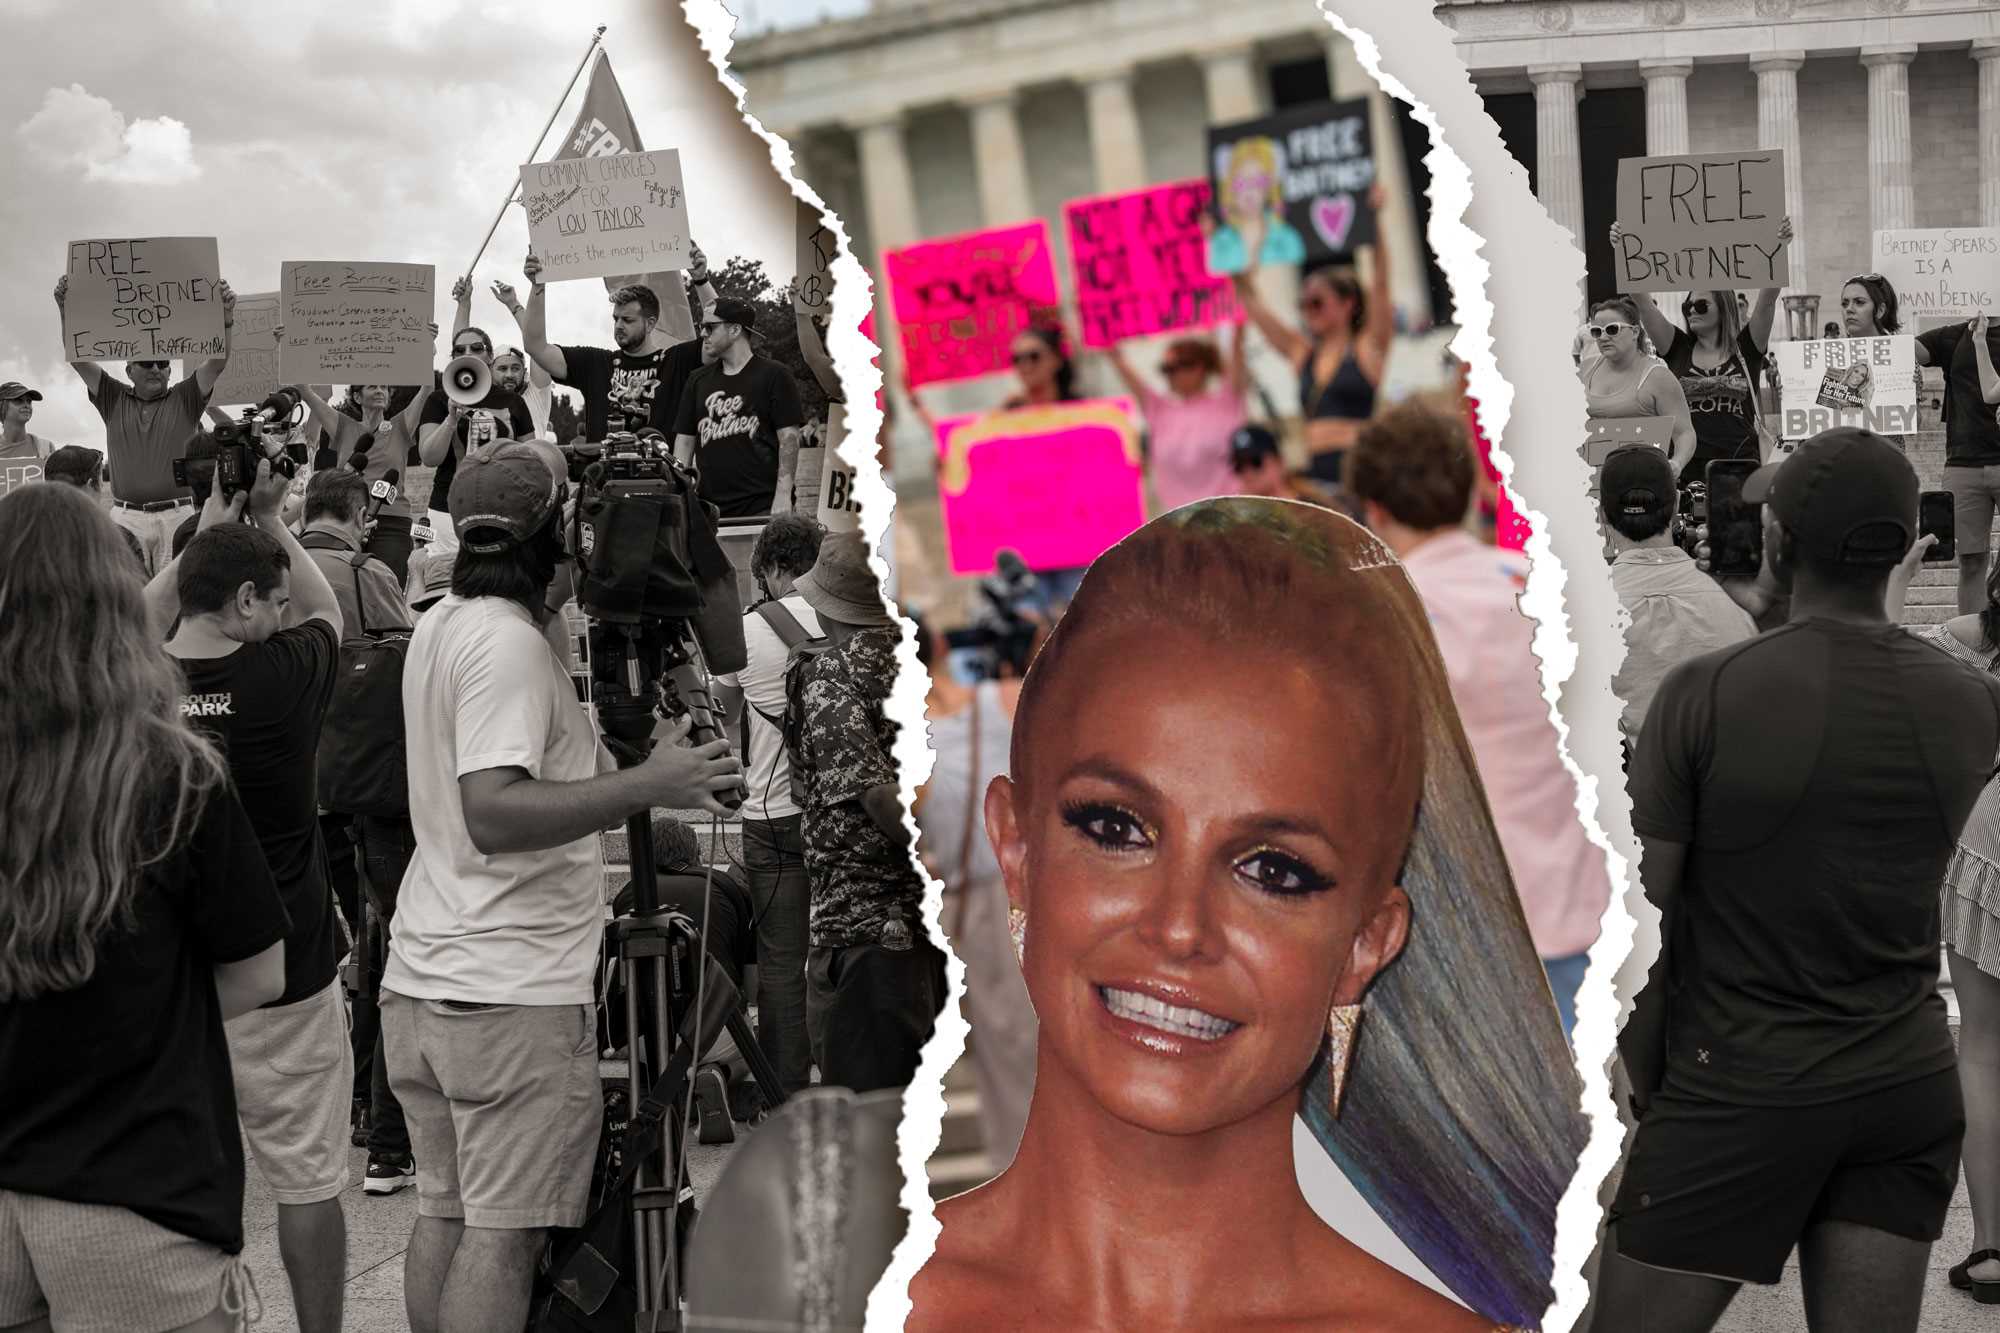 Collage de imágenes de las protestas de Britney Spears & Free Britney